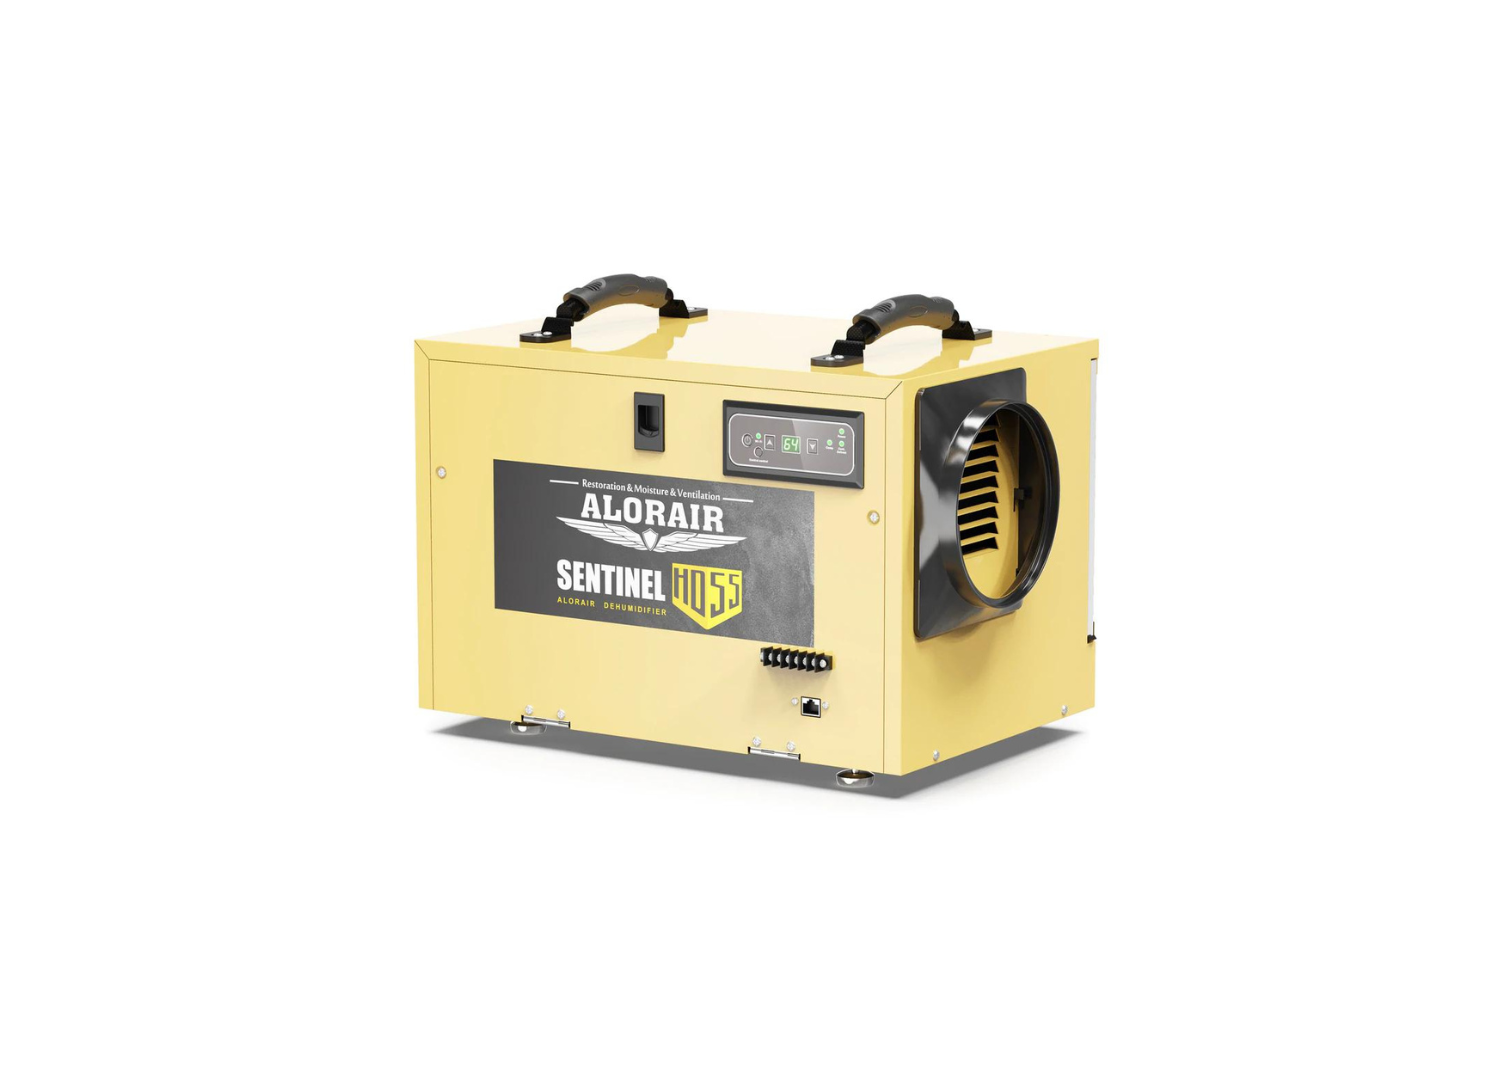 Alorair Sentinel HD55S Gold Basement & Crawl Space Dehumidifier